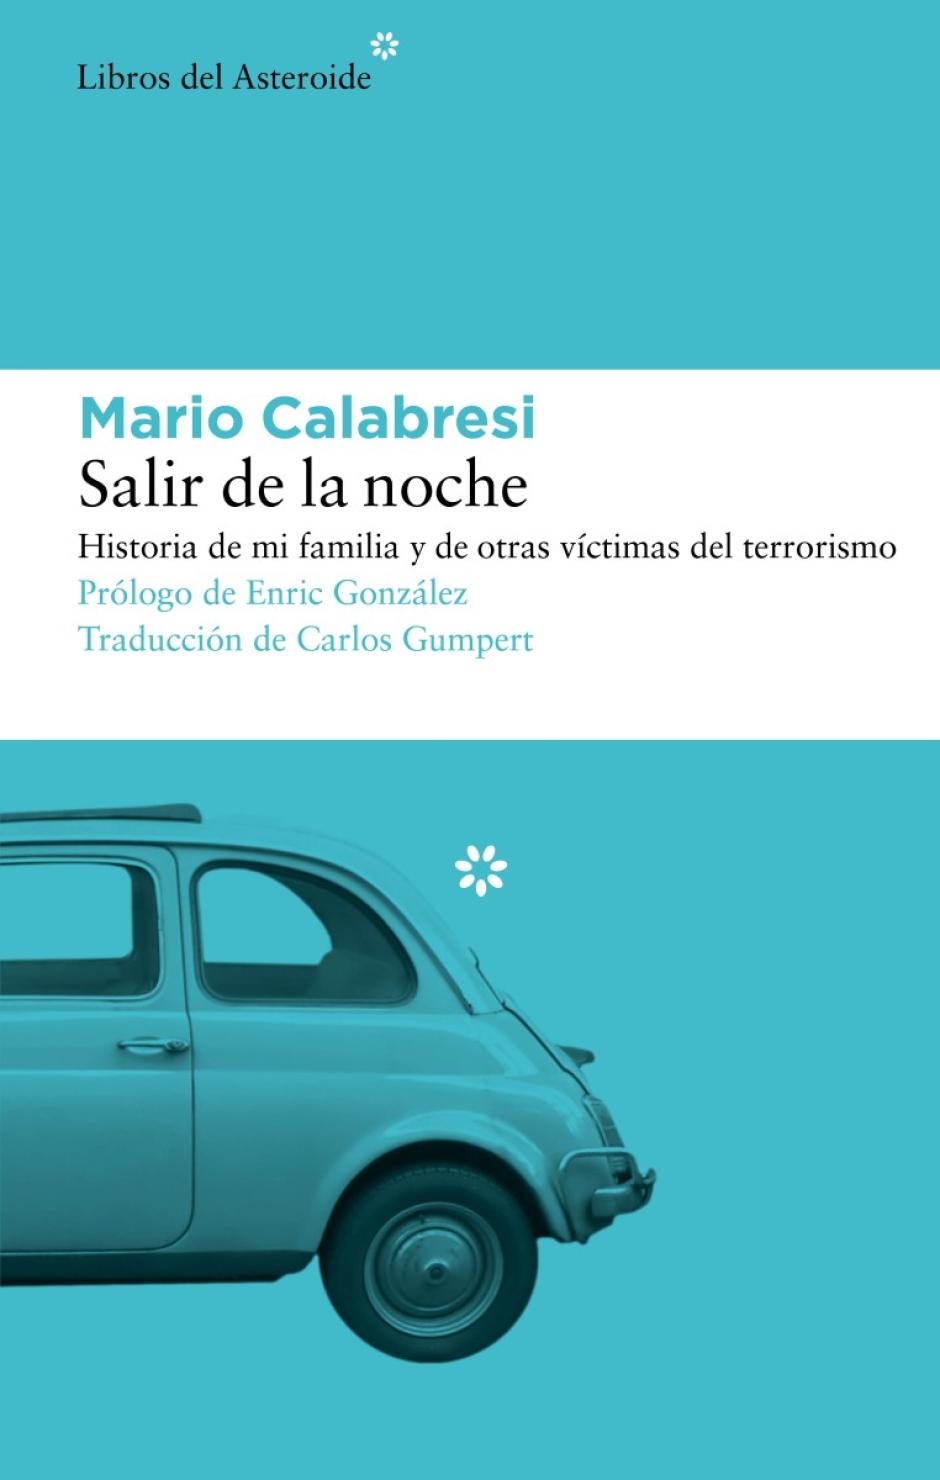 'Salir de la noche', de Mario Calabresi, recoge la memoria de las víctimas del terrorismo durante 'los años de plomo', incluido el asesinato de su padre